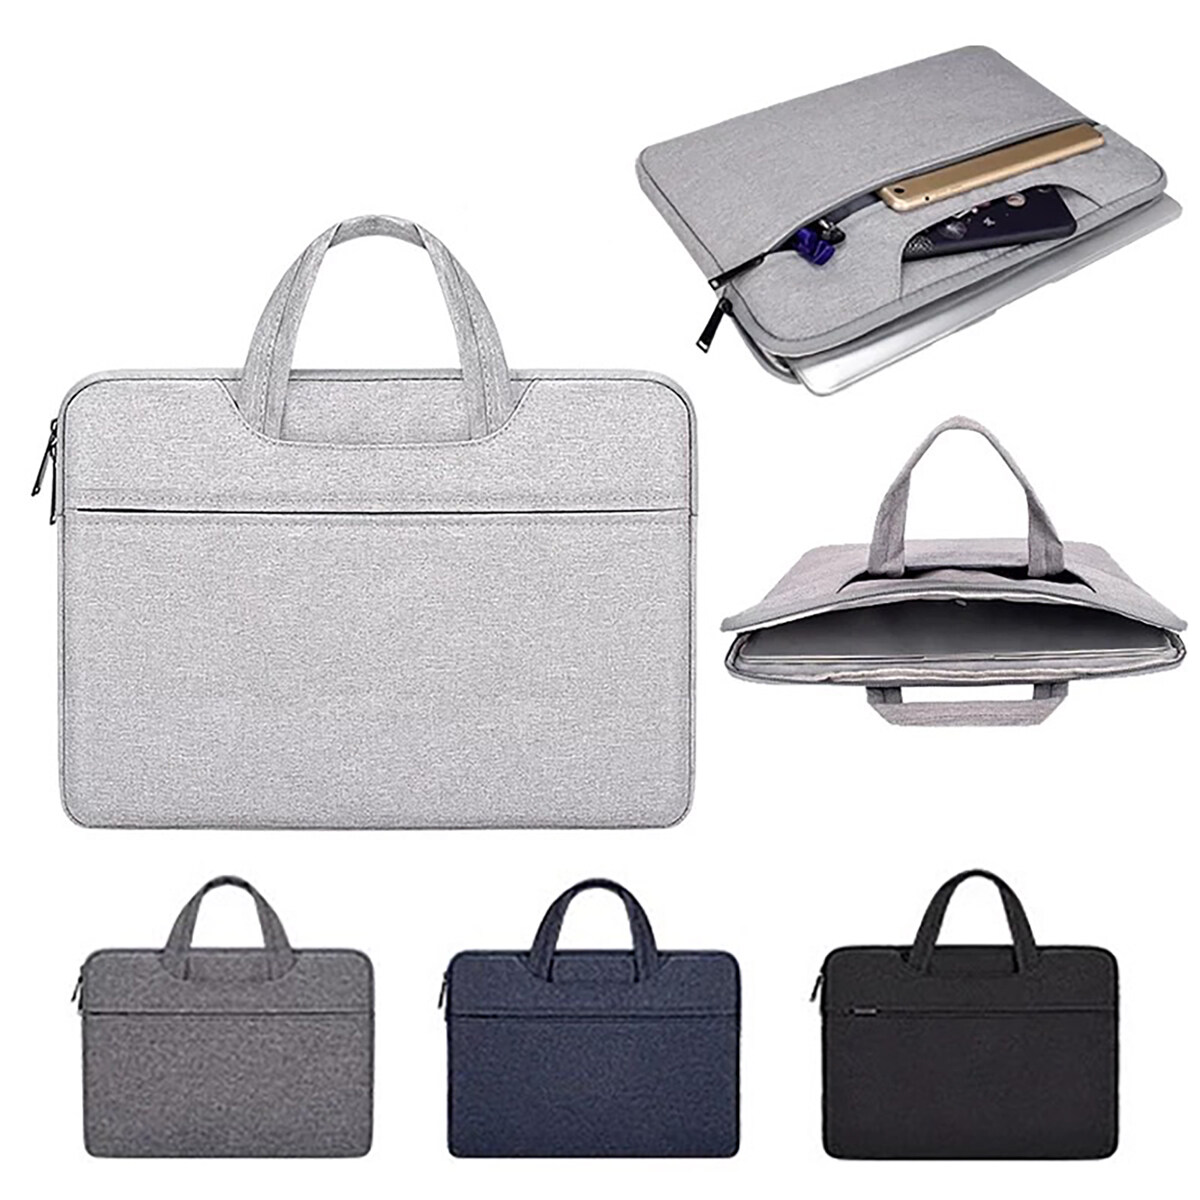 กระเป๋าโน๊ตบุ๊ค N-1 laptop bag macbook notebook case ซองแมคบุ๊ค ซองโน๊ตบุ๊ค  กระเป๋าแล็ปท็อป กันกระแทก กันรอยขีดข่วน / COCO-3C